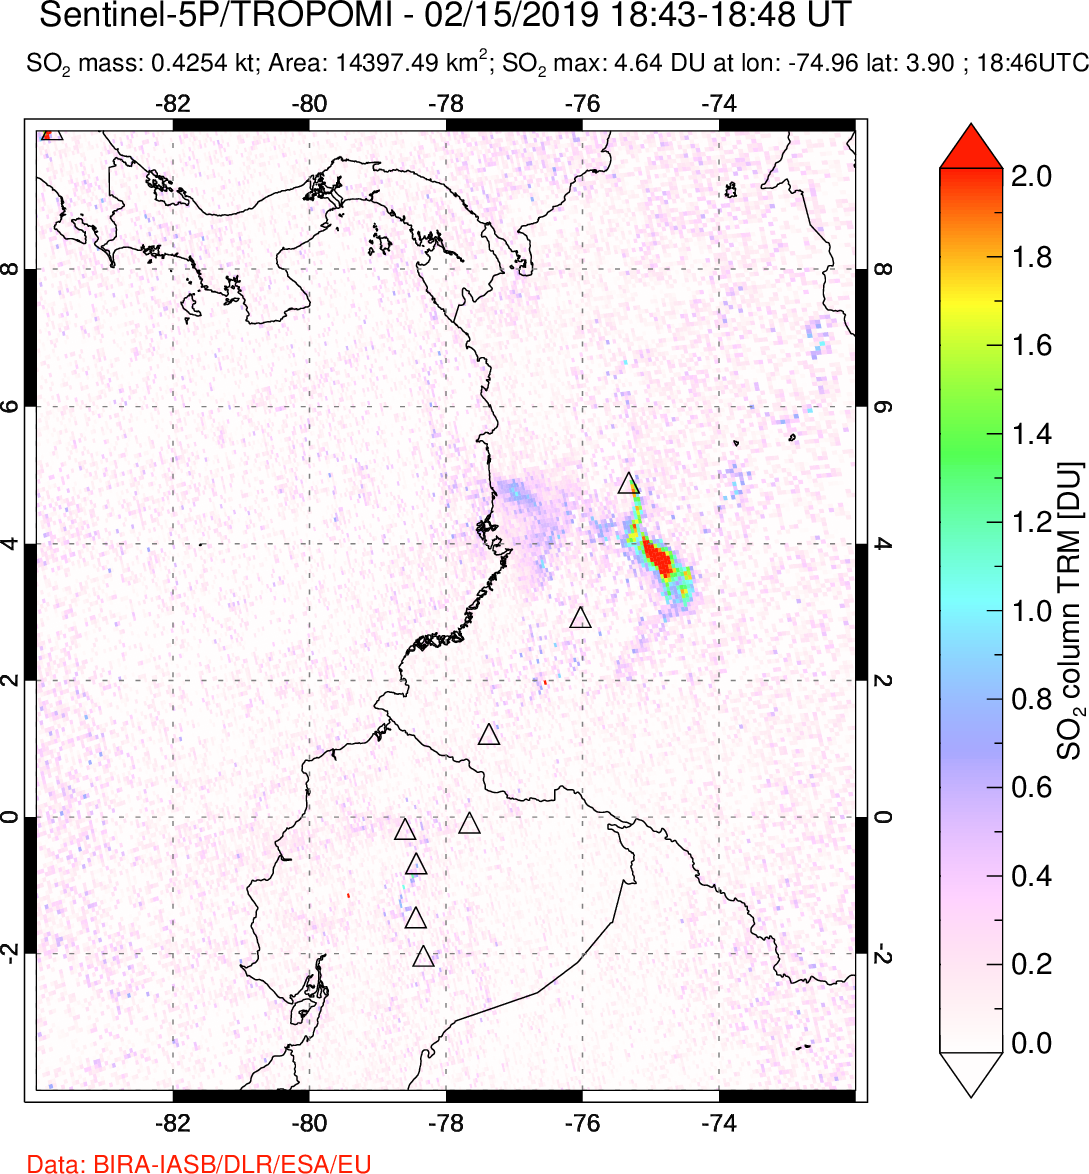 A sulfur dioxide image over Ecuador on Feb 15, 2019.